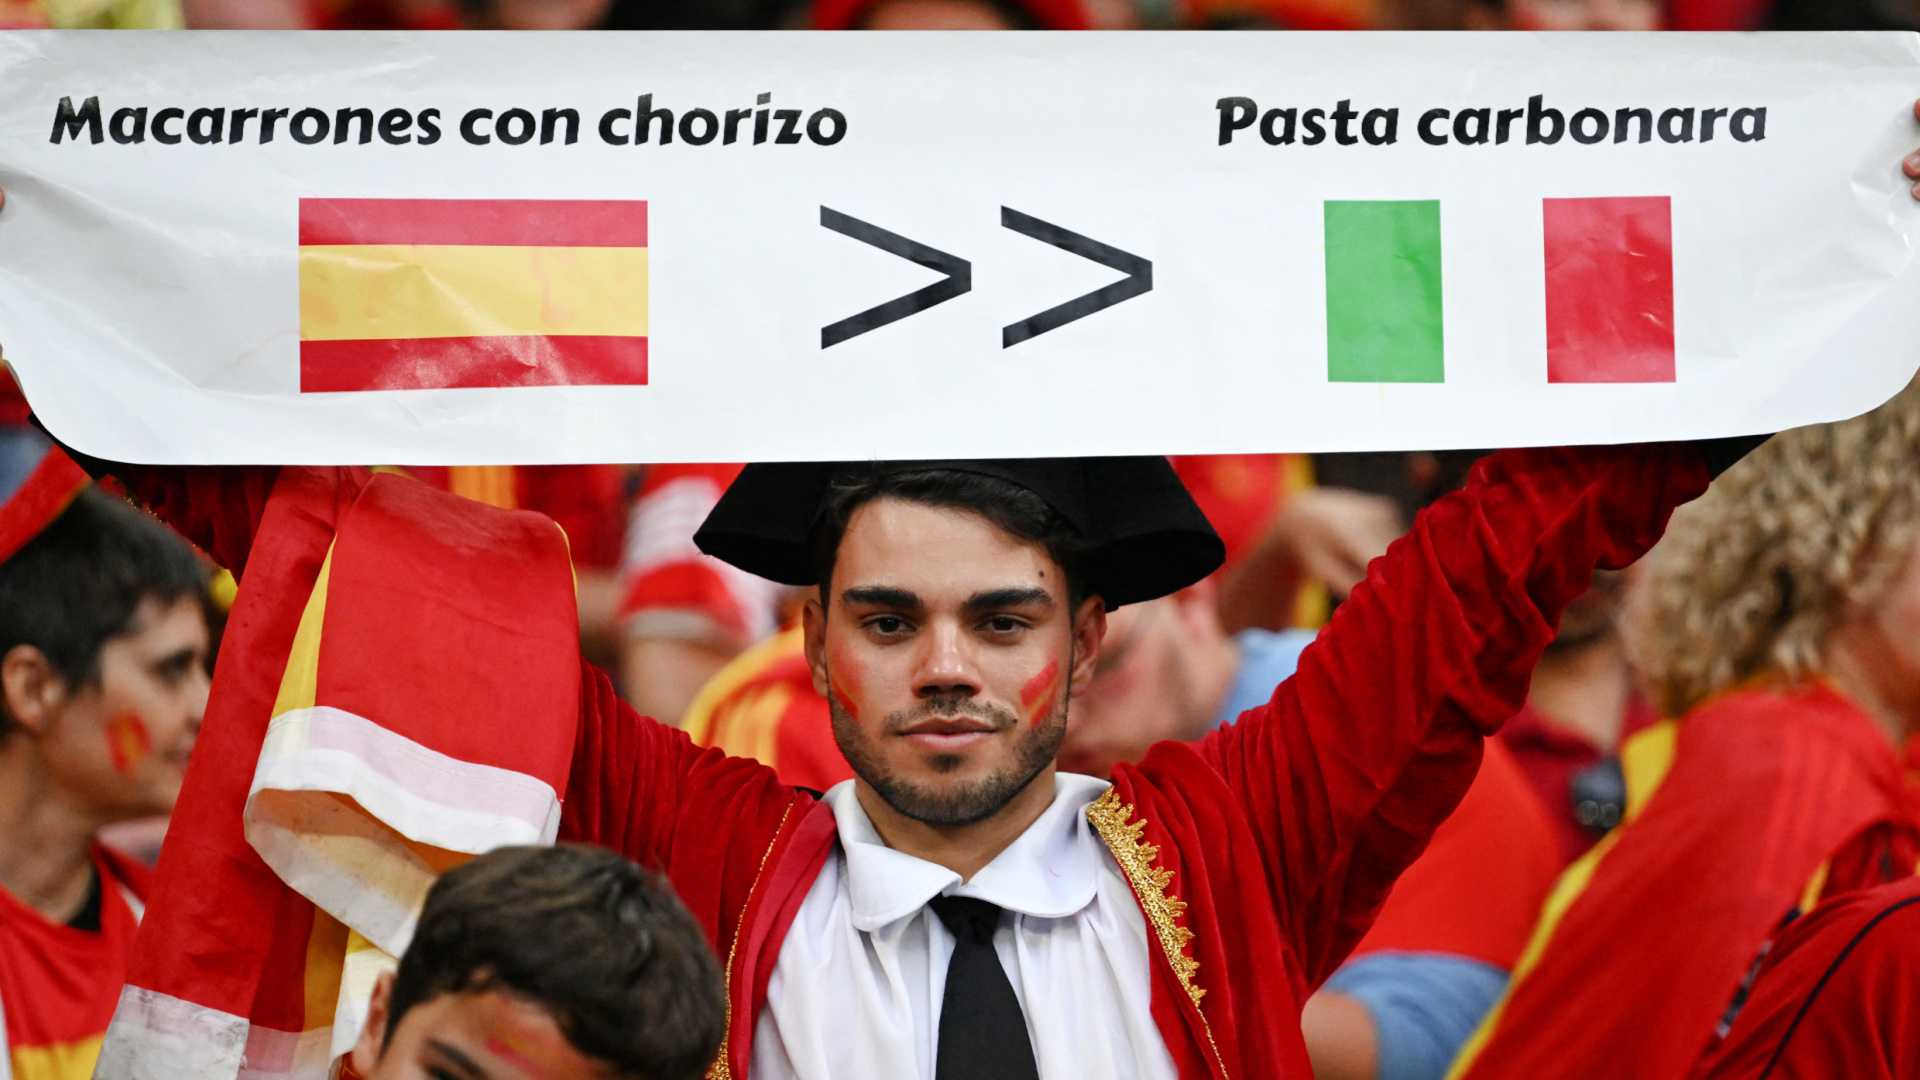 L'umorismo degli spagnoli: i migliori meme dopo la loro schiacciante vittoria sull'Italia